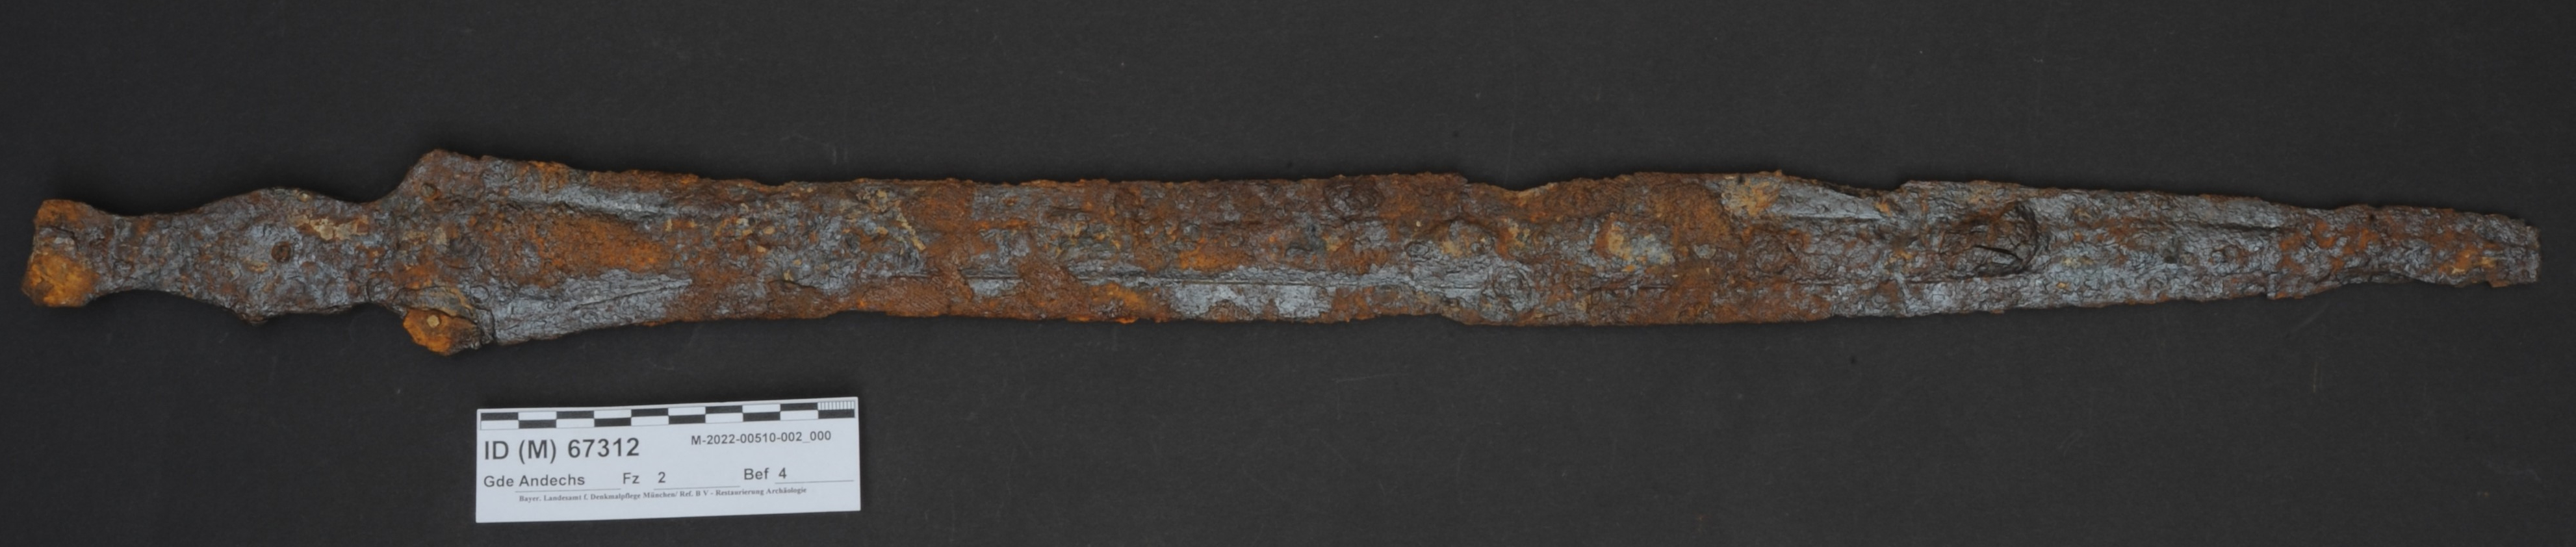 V Německu objevili unikátní 2 800 let staré meče, dokládají technologický skok doby halštatské